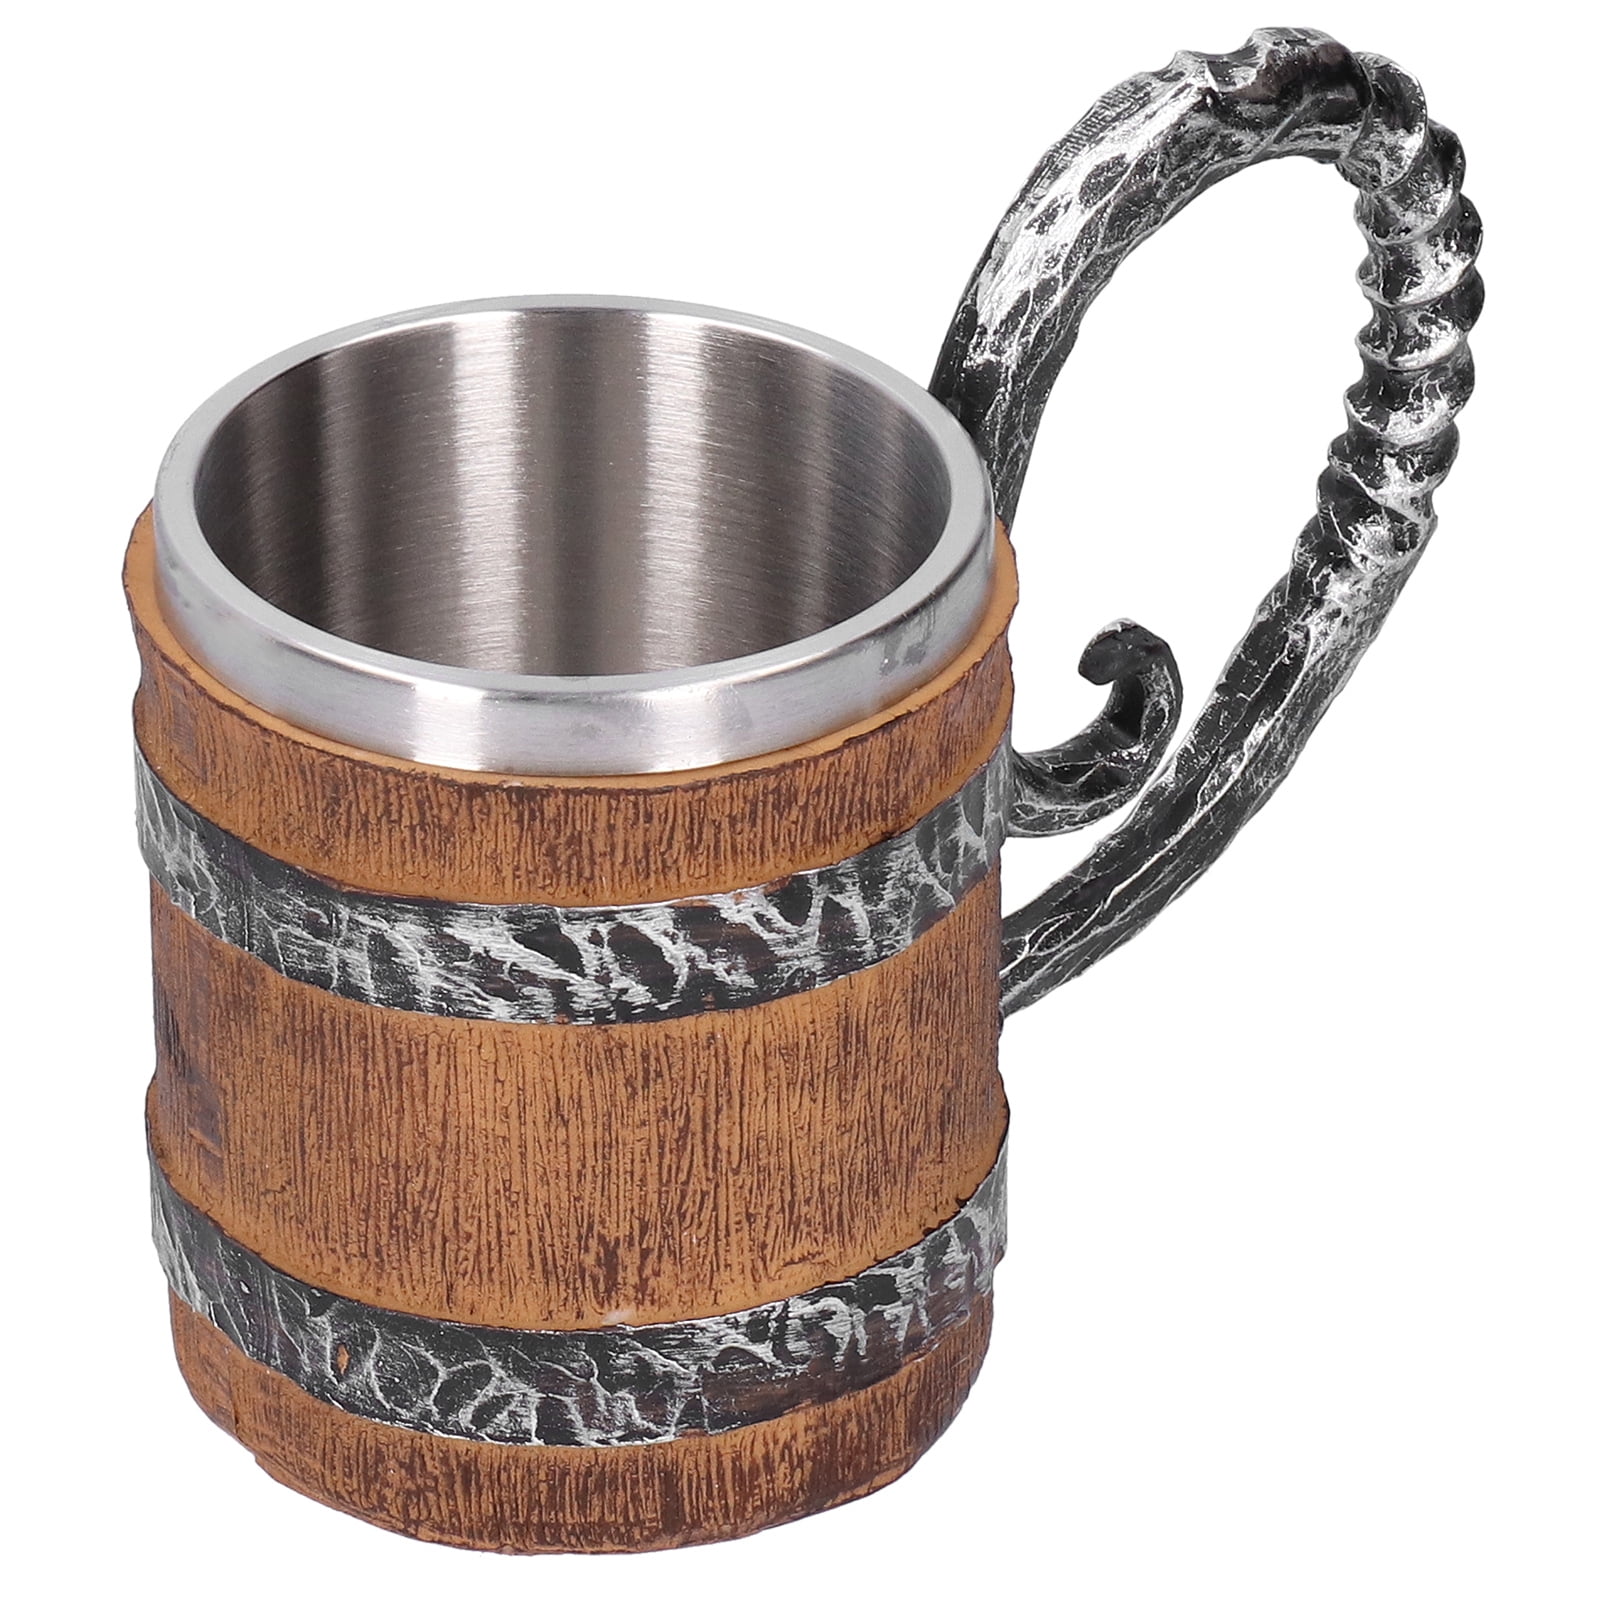 18 oz Mug Stainless Steel Resin Coffee Beer Mug Retro Wooden Barrel Drink Cup